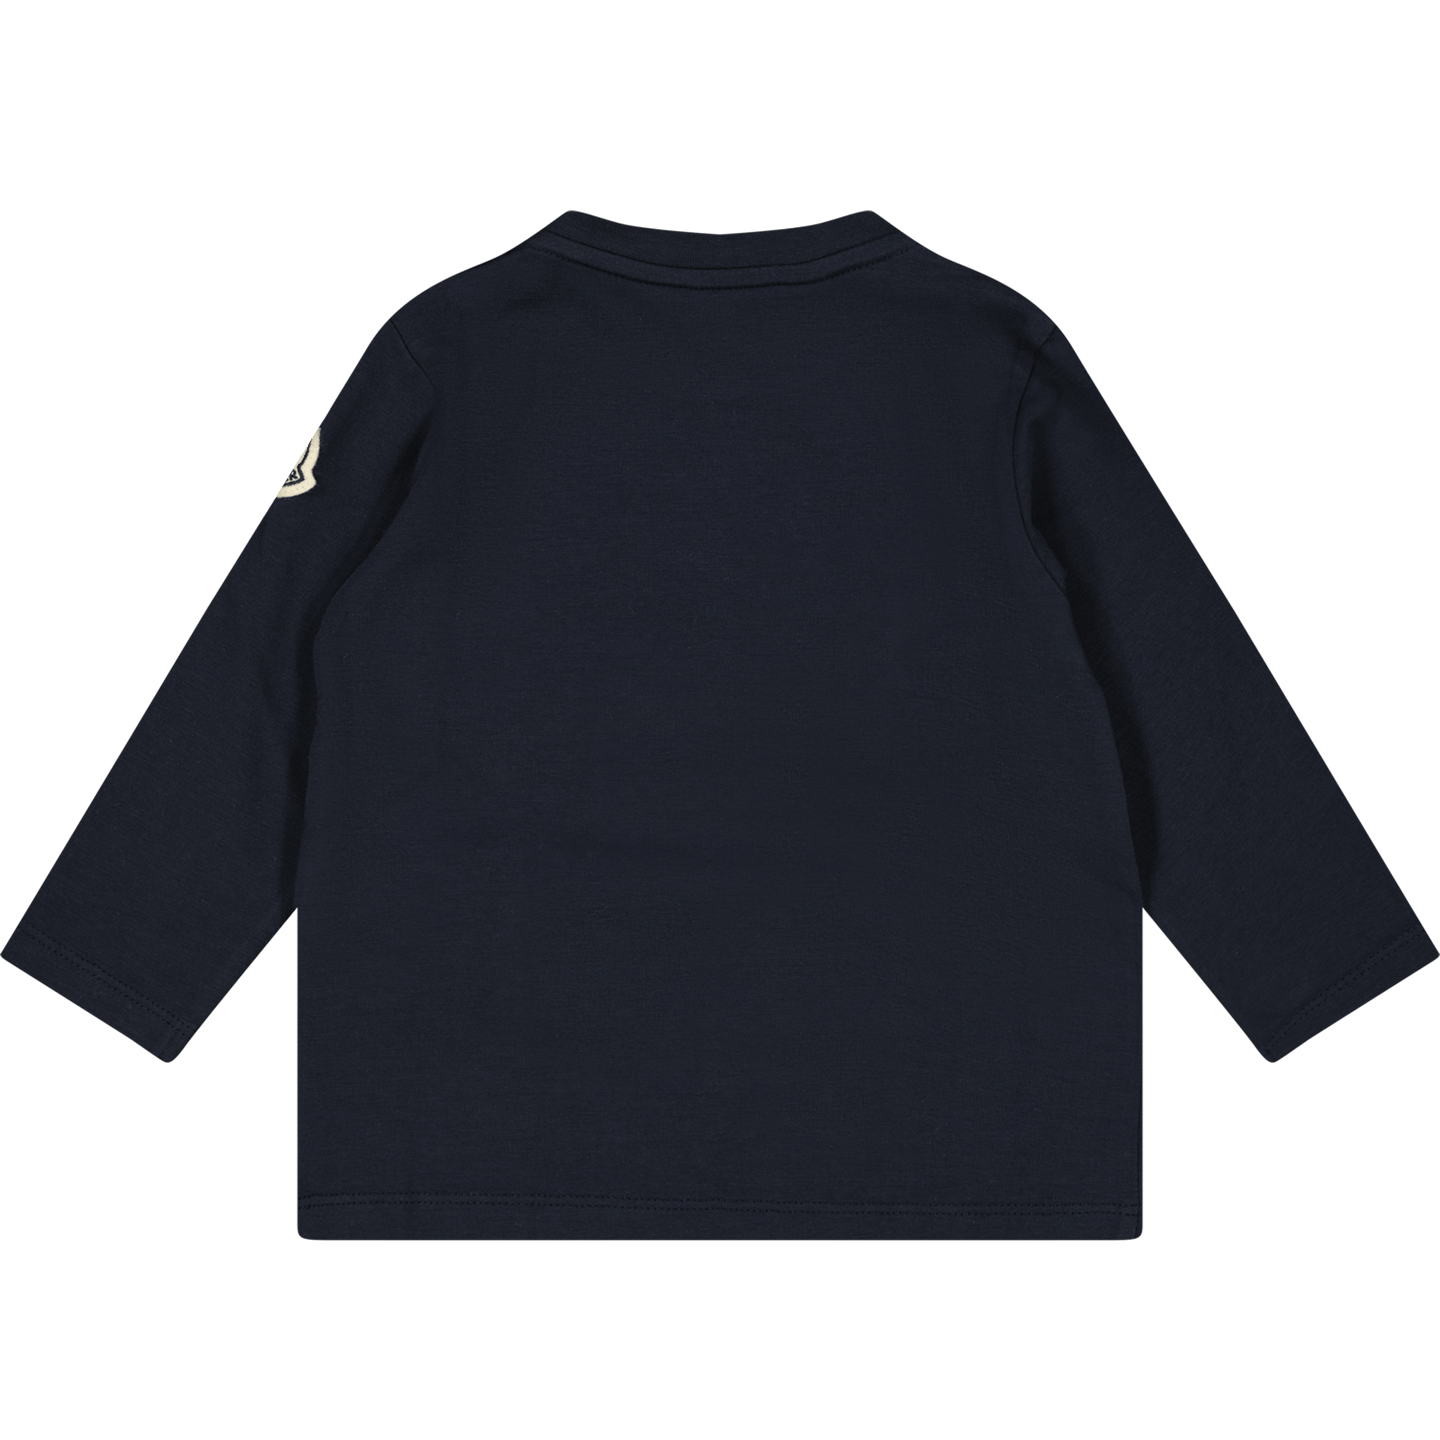 Moncler Baby Jongens T-Shirt Navy 3/6